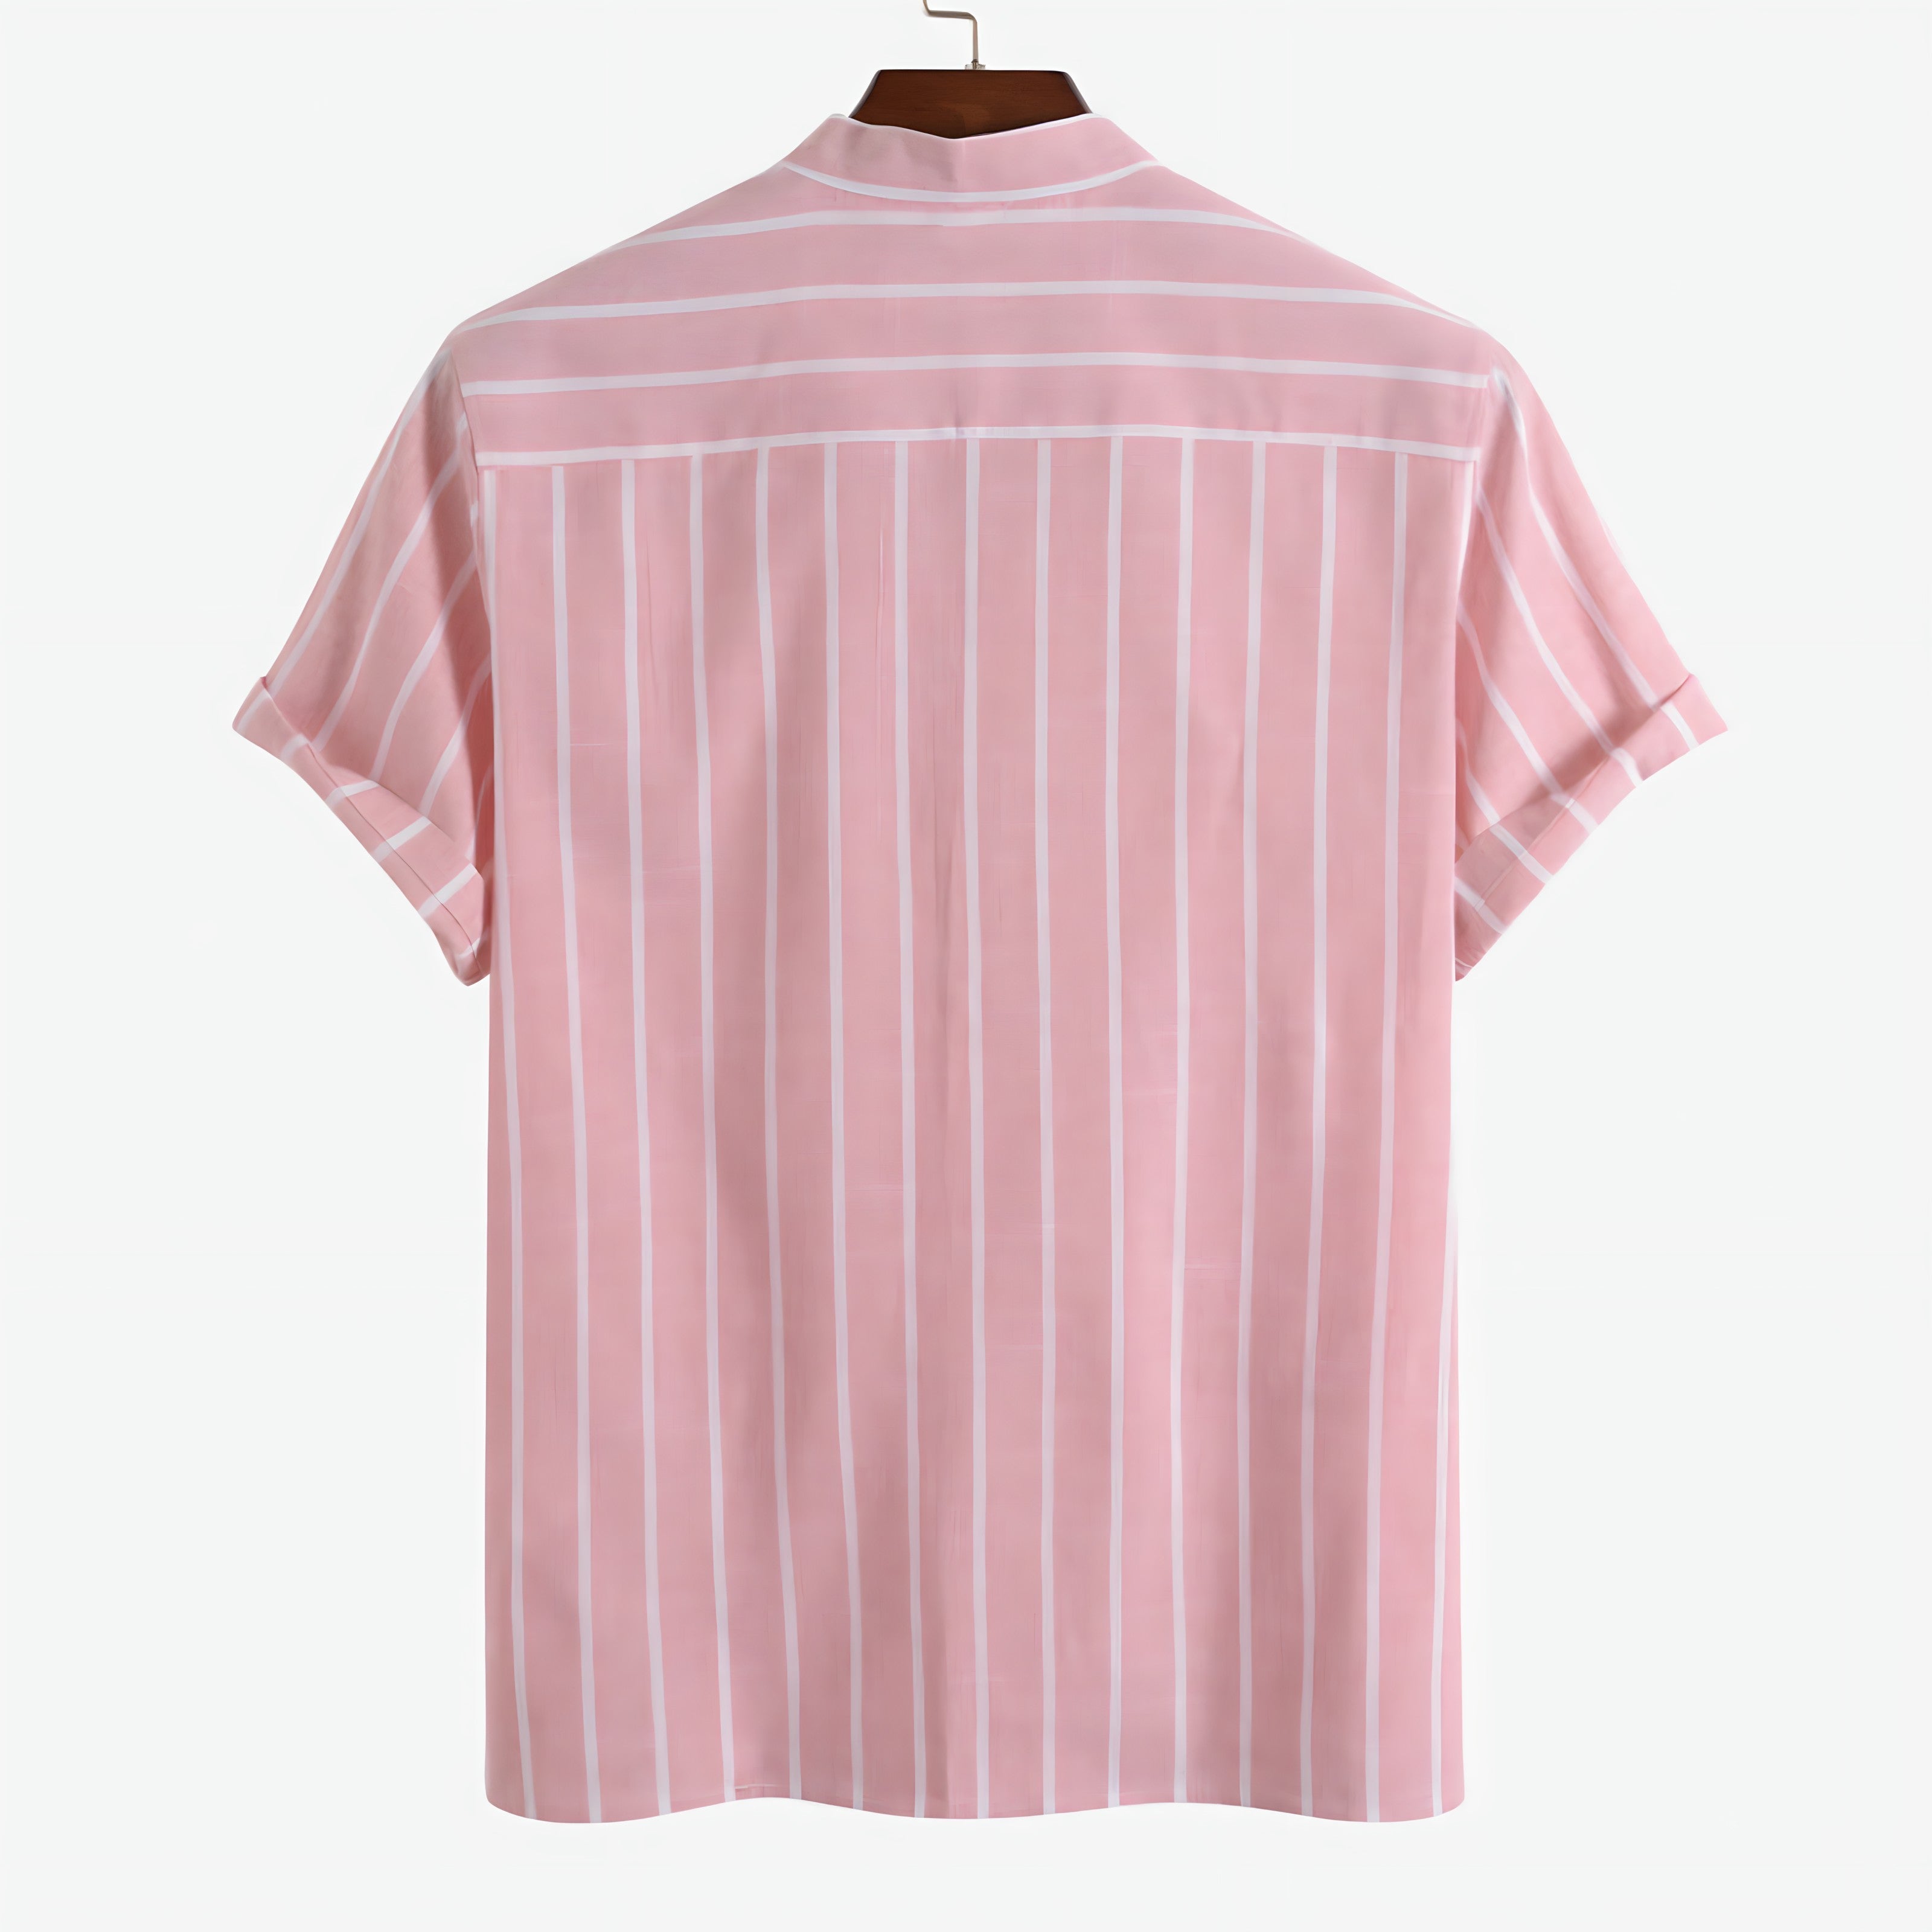 Aubert - Stylish men's shirt